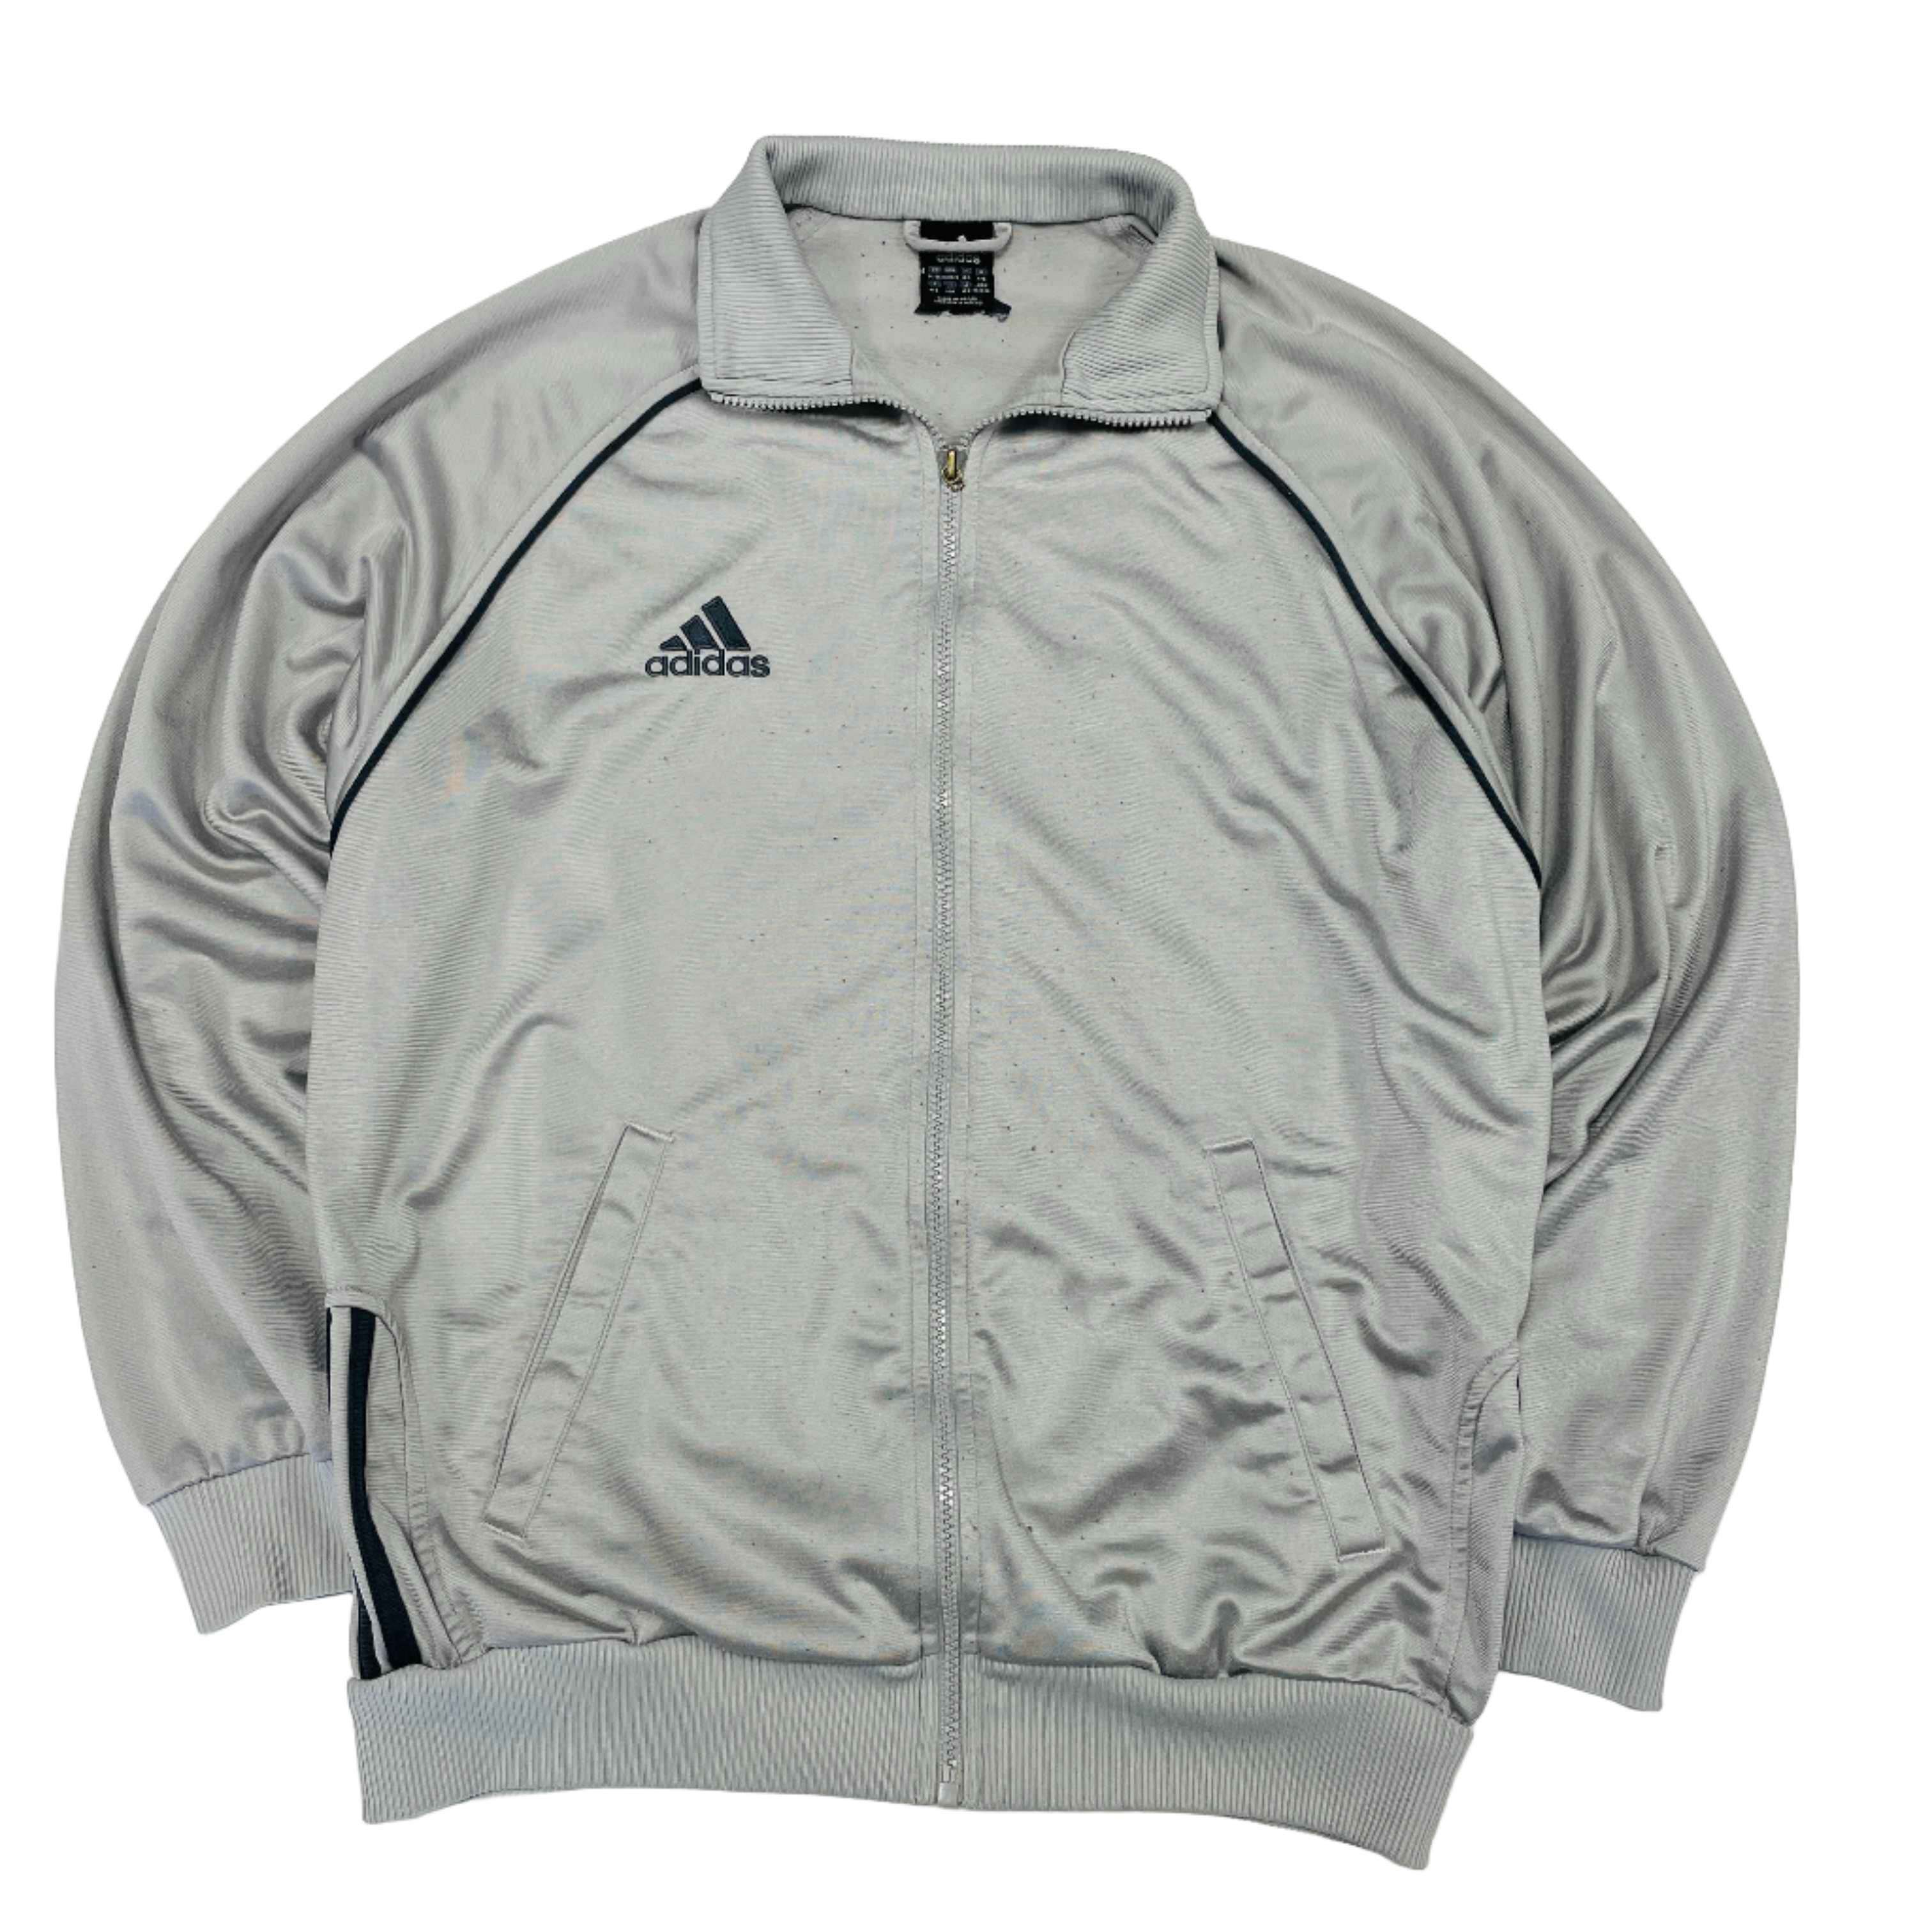 Adidas Track Jacket - Large